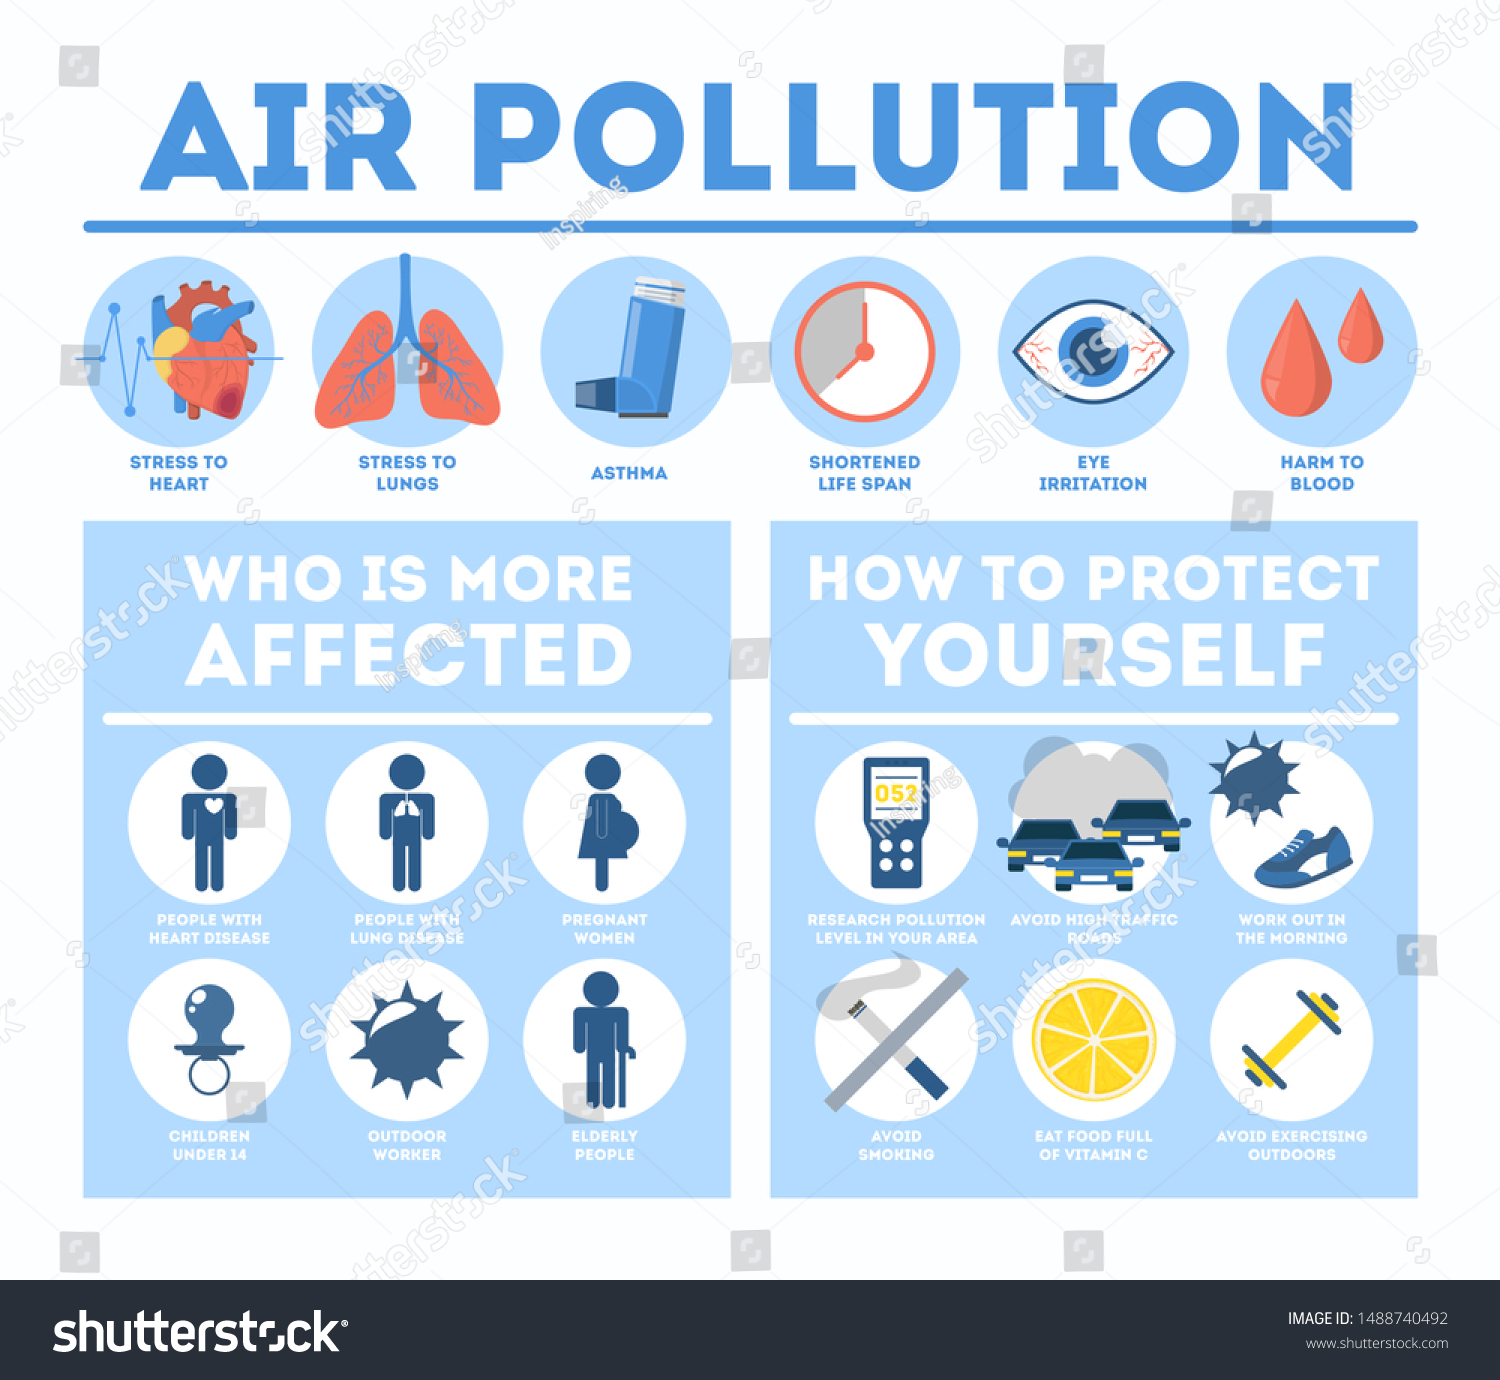 Health Effects Air Pollution Infographic Toxic Vector De Stock Libre De Regalías 1488740492 9295